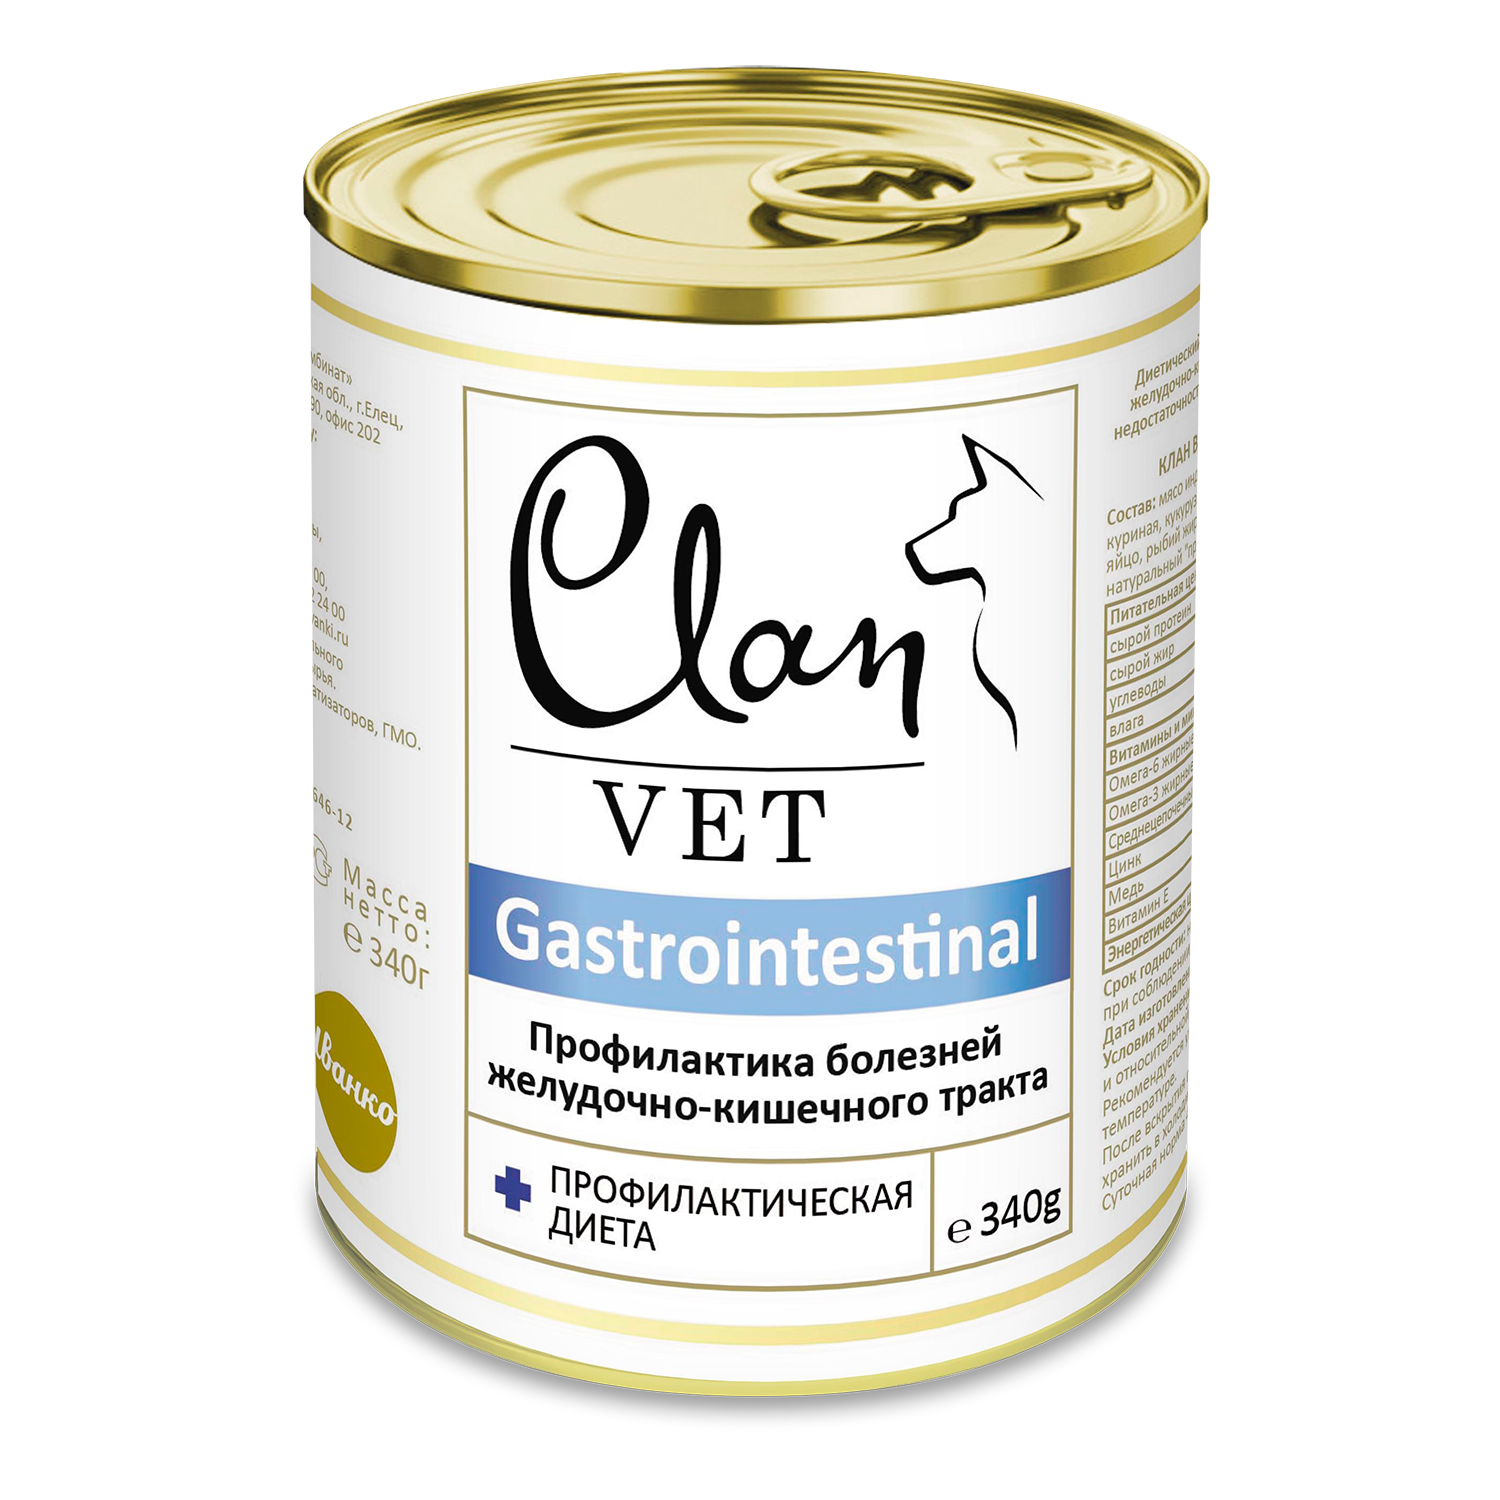 Корм для собак Clan vet gastrointestinal профилактика болезней ЖКТ диетические консервы 340г - фото 1